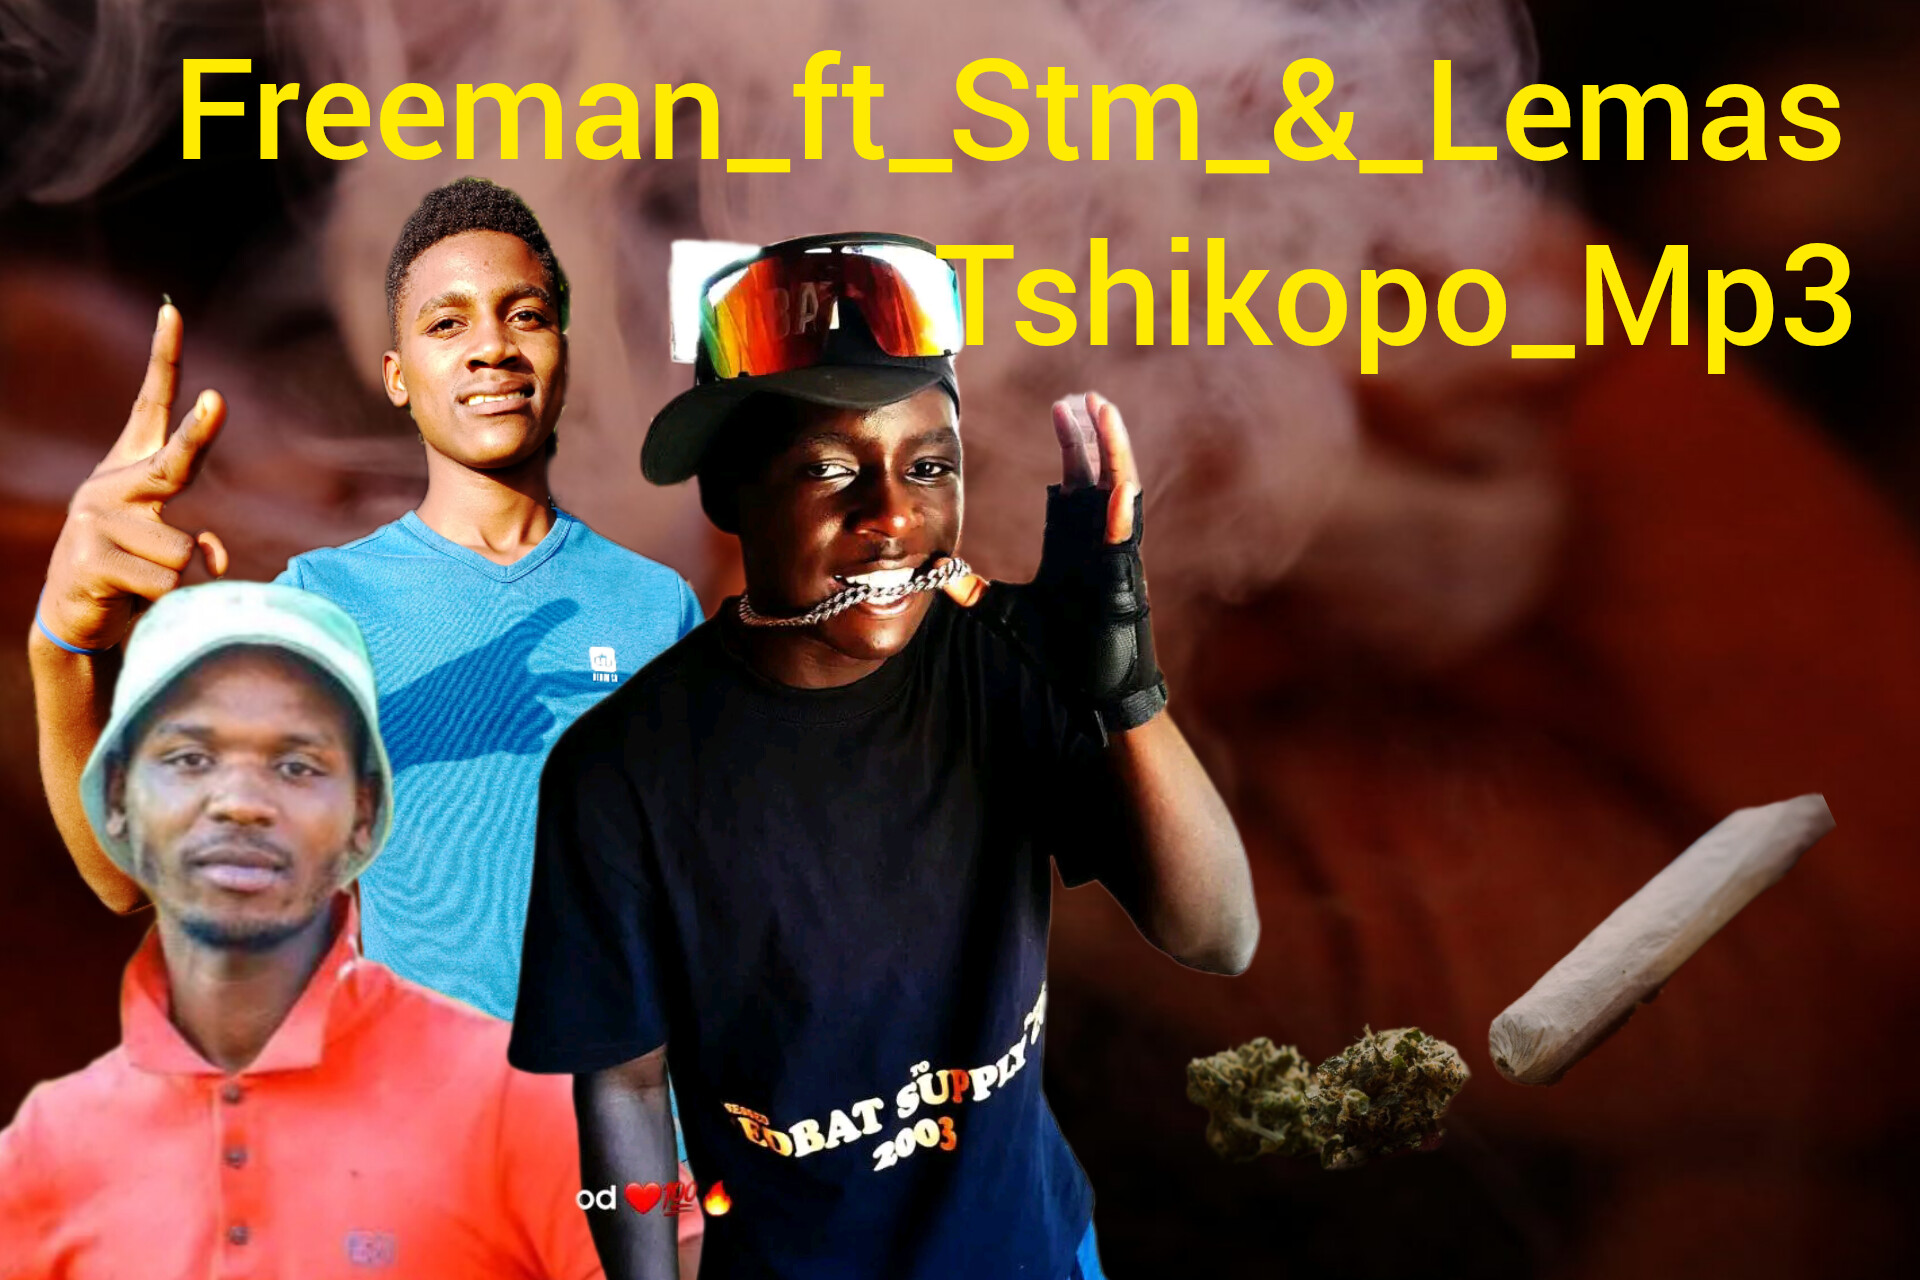 Tshikopo - Freeman ft Stm & Lemas